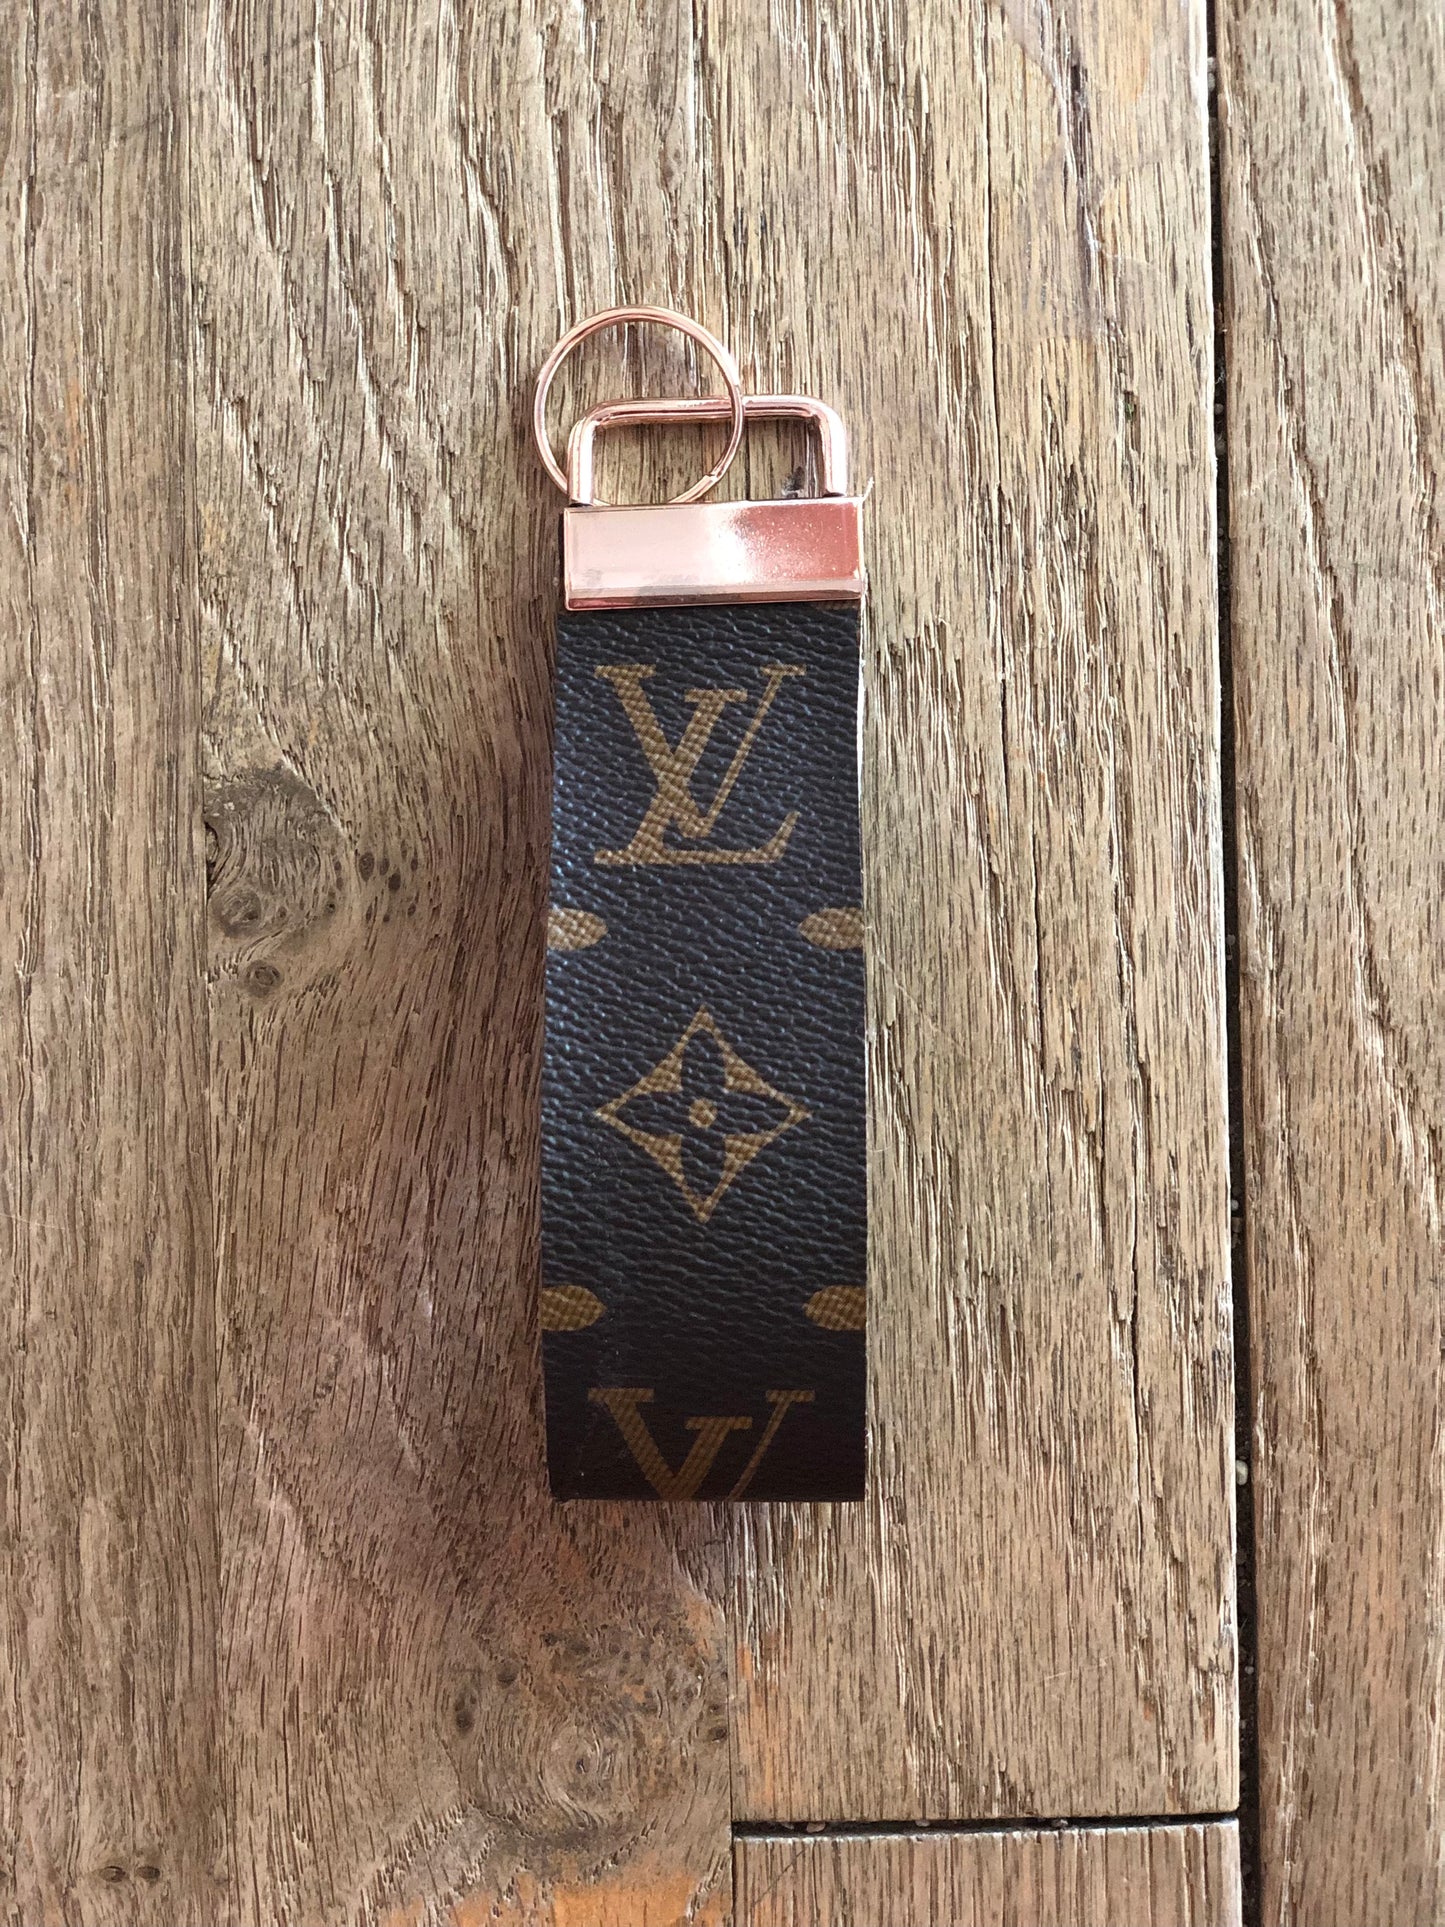 Repurposed Vuitton 